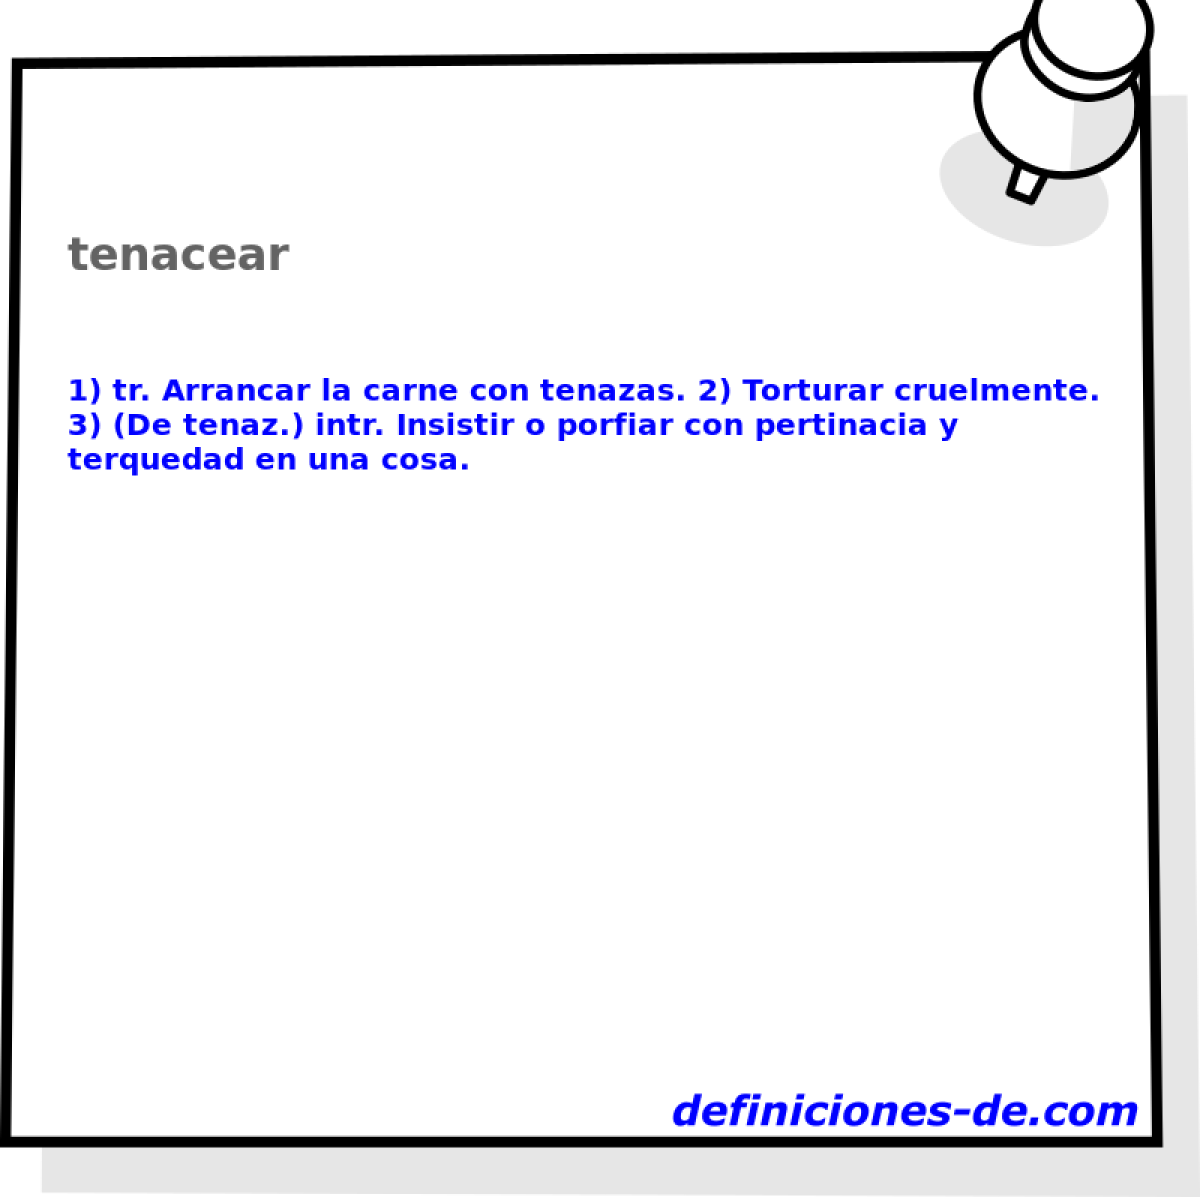 tenacear 